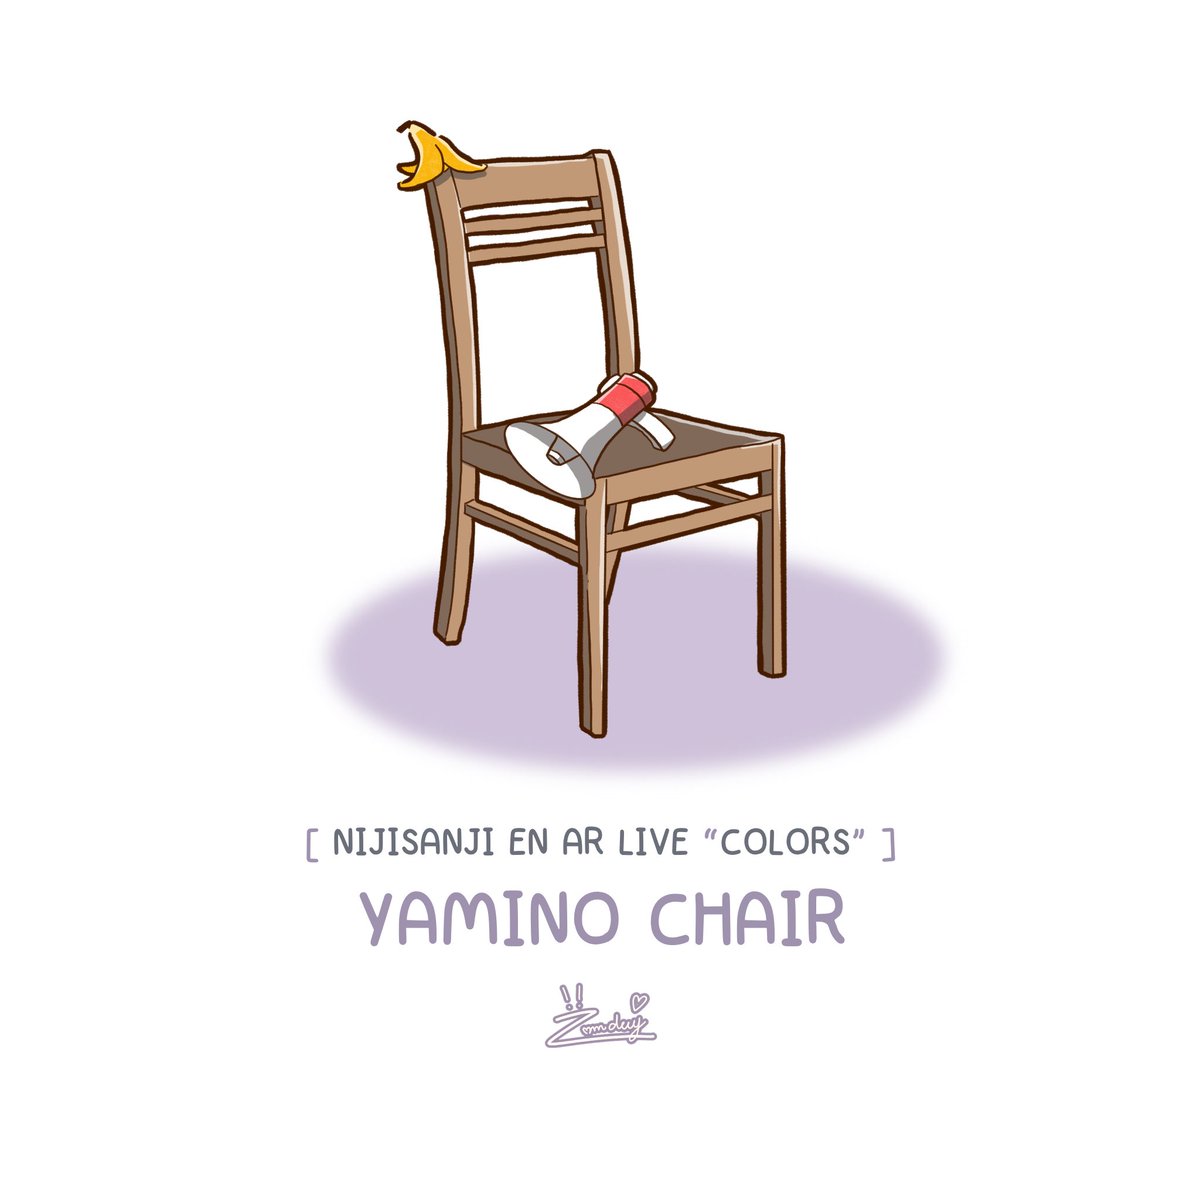 I LOVE YAMINO CHAIR 

 #ShuNanigans